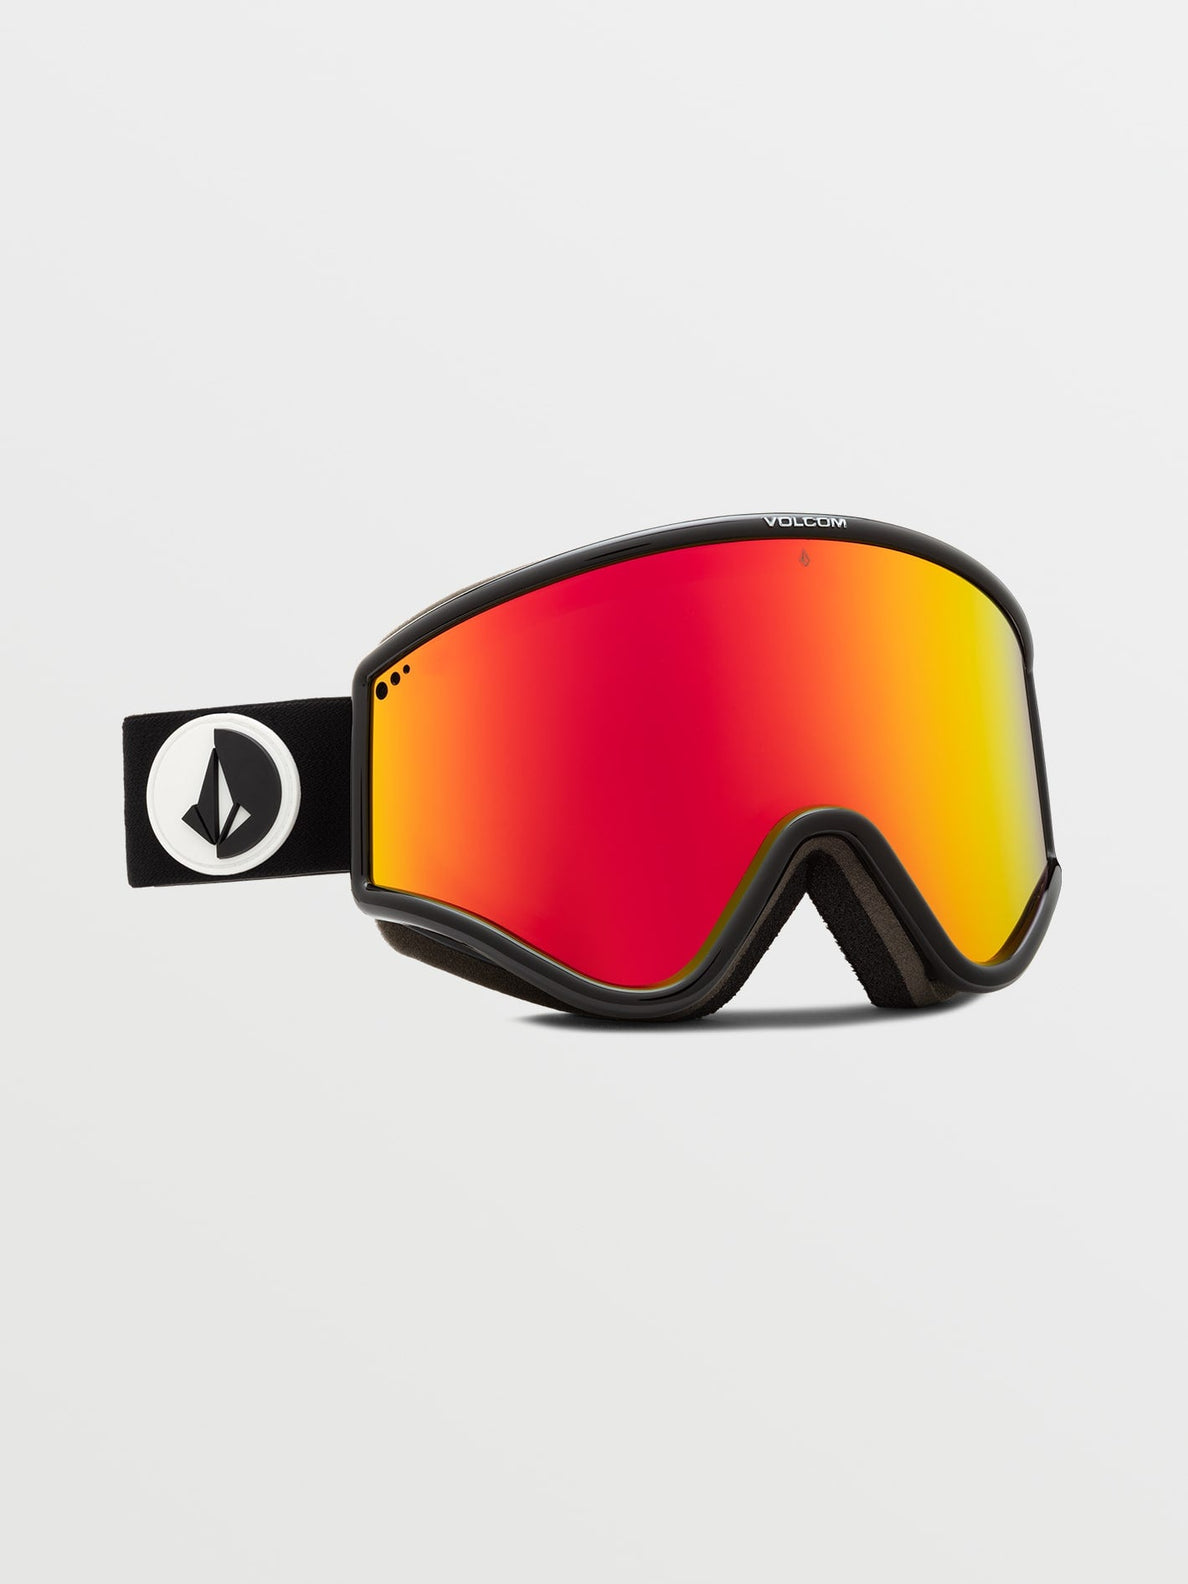 Gafas de ventisca Volcom Yae Gloss Black - Red Chrome | Gafas de snowboard | Snowboard Shop | Volcom Shop | surfdevils.com